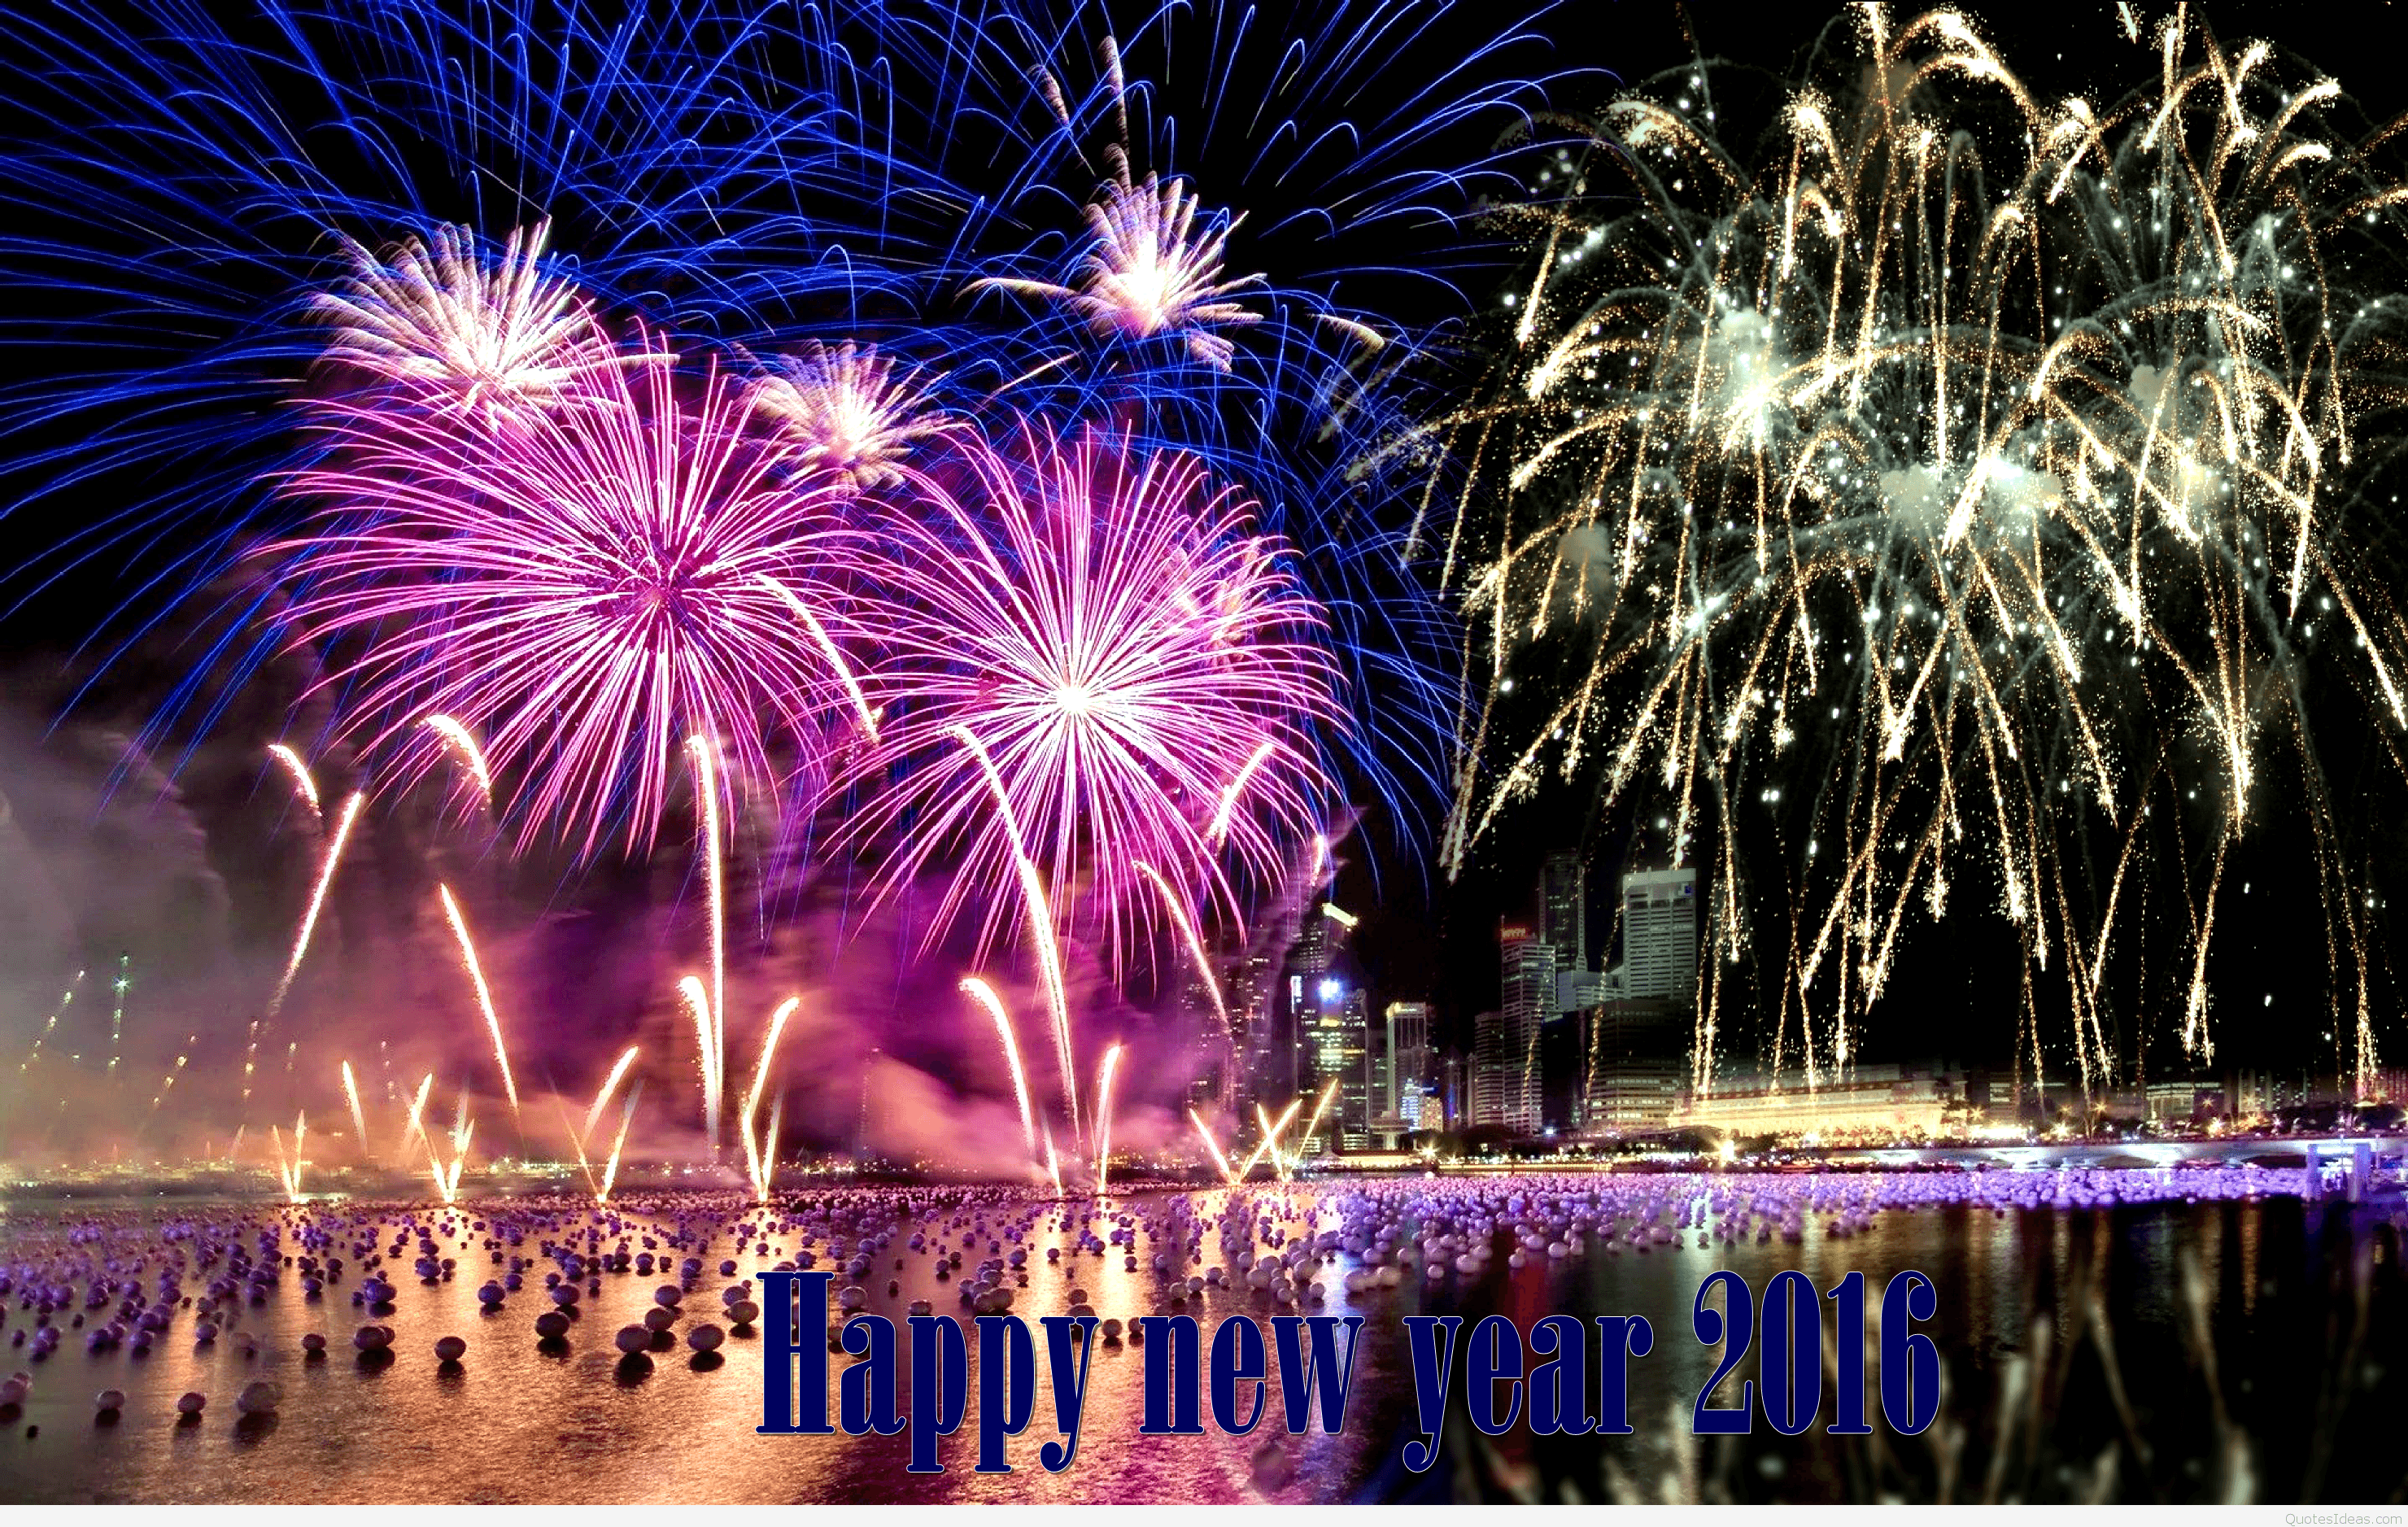 Happy New Year 2015 CountDown Celebration Fireworks